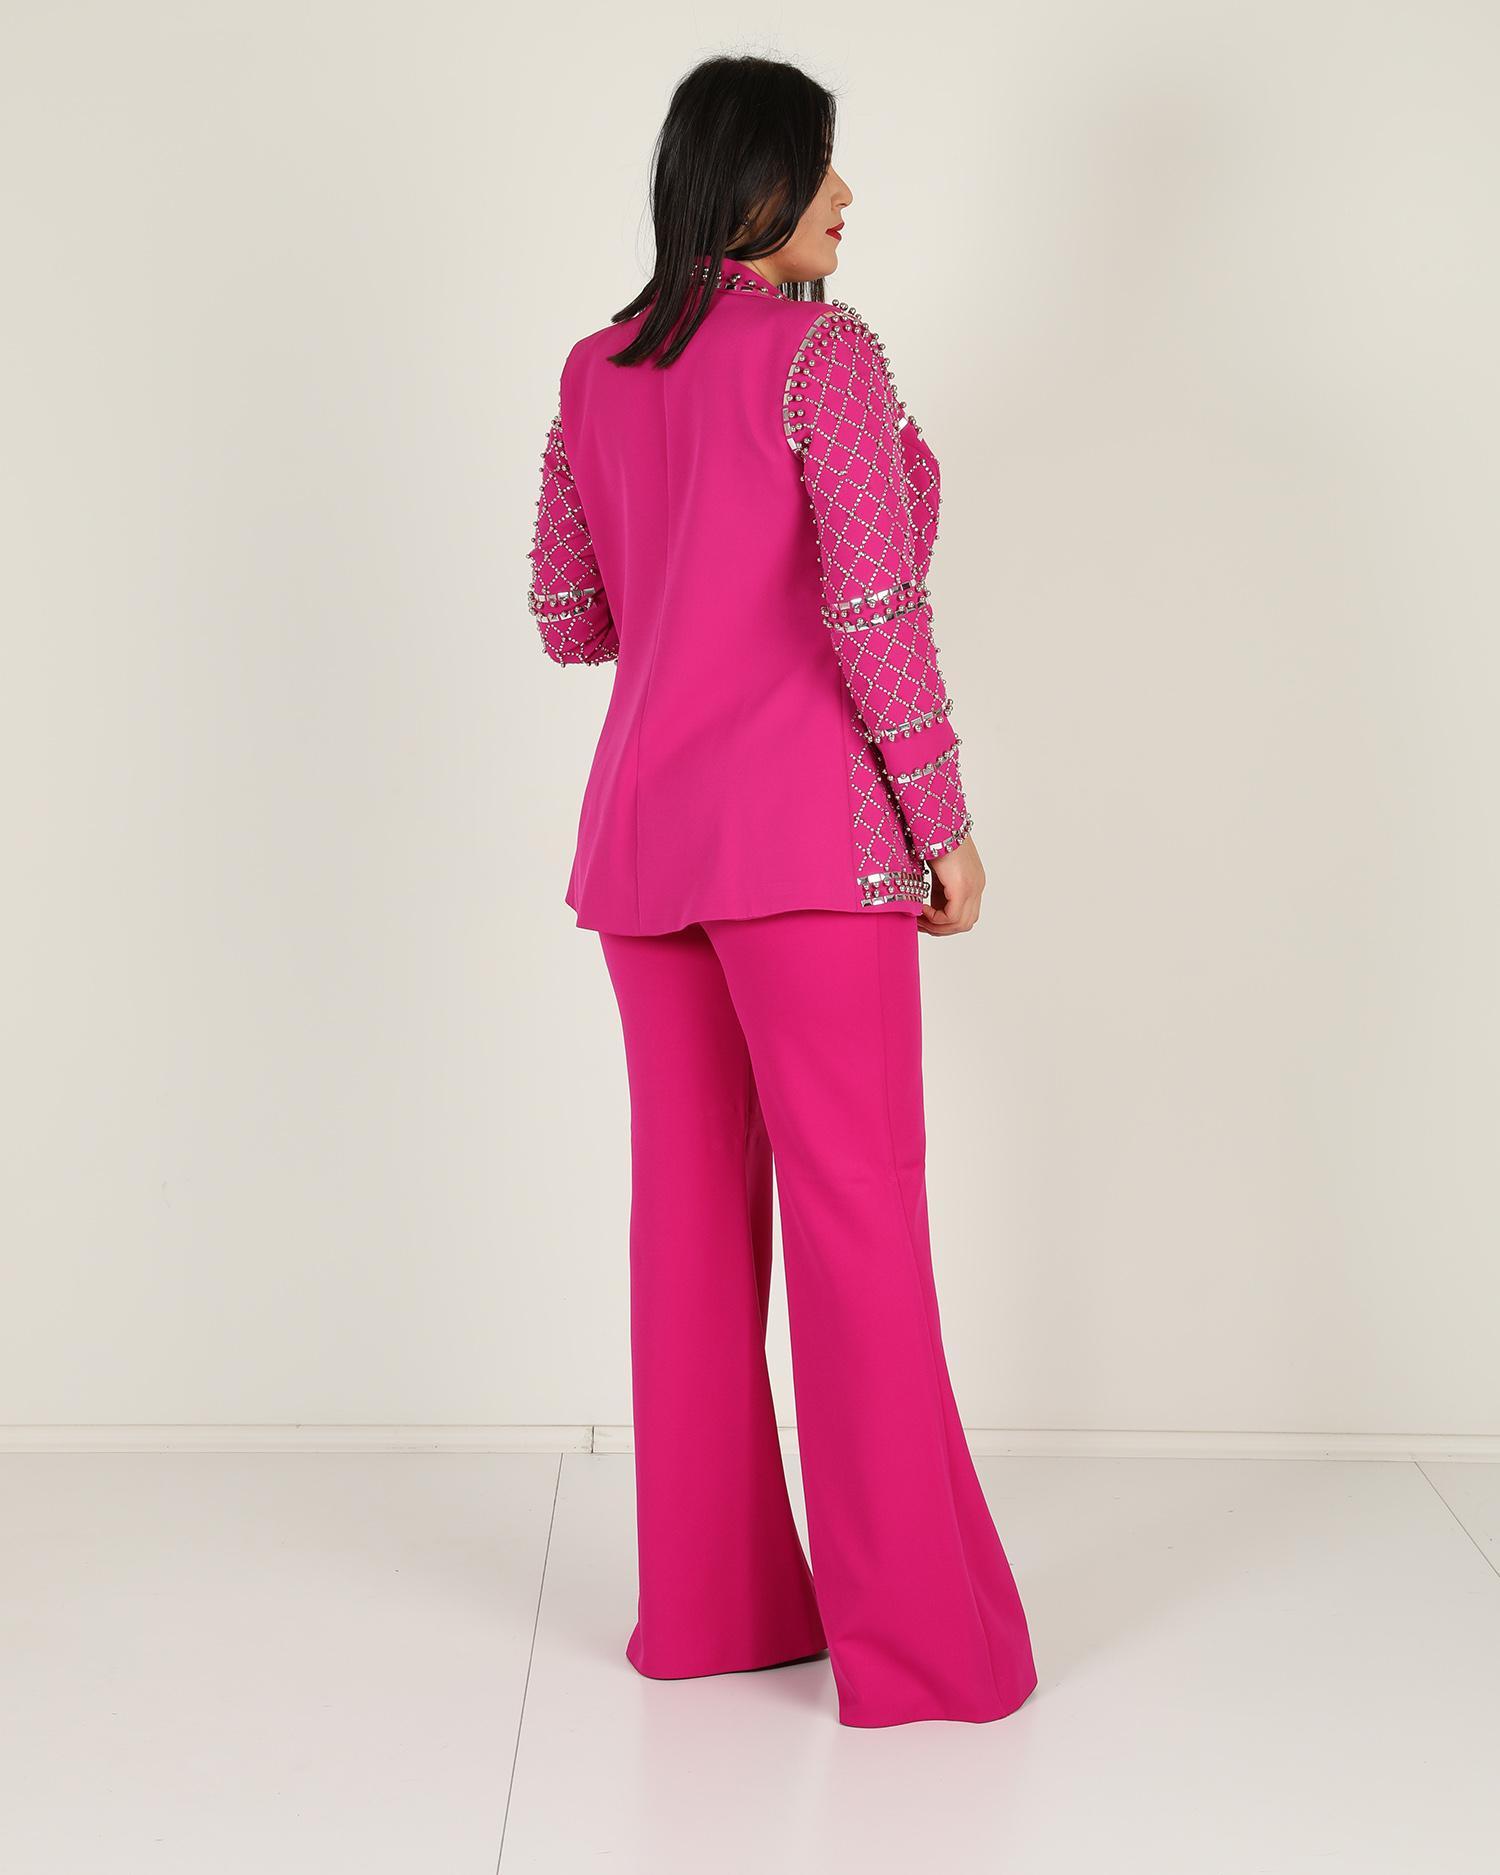 Hot pink floral printed high low shirt and pants – KRUPA KAPADIA